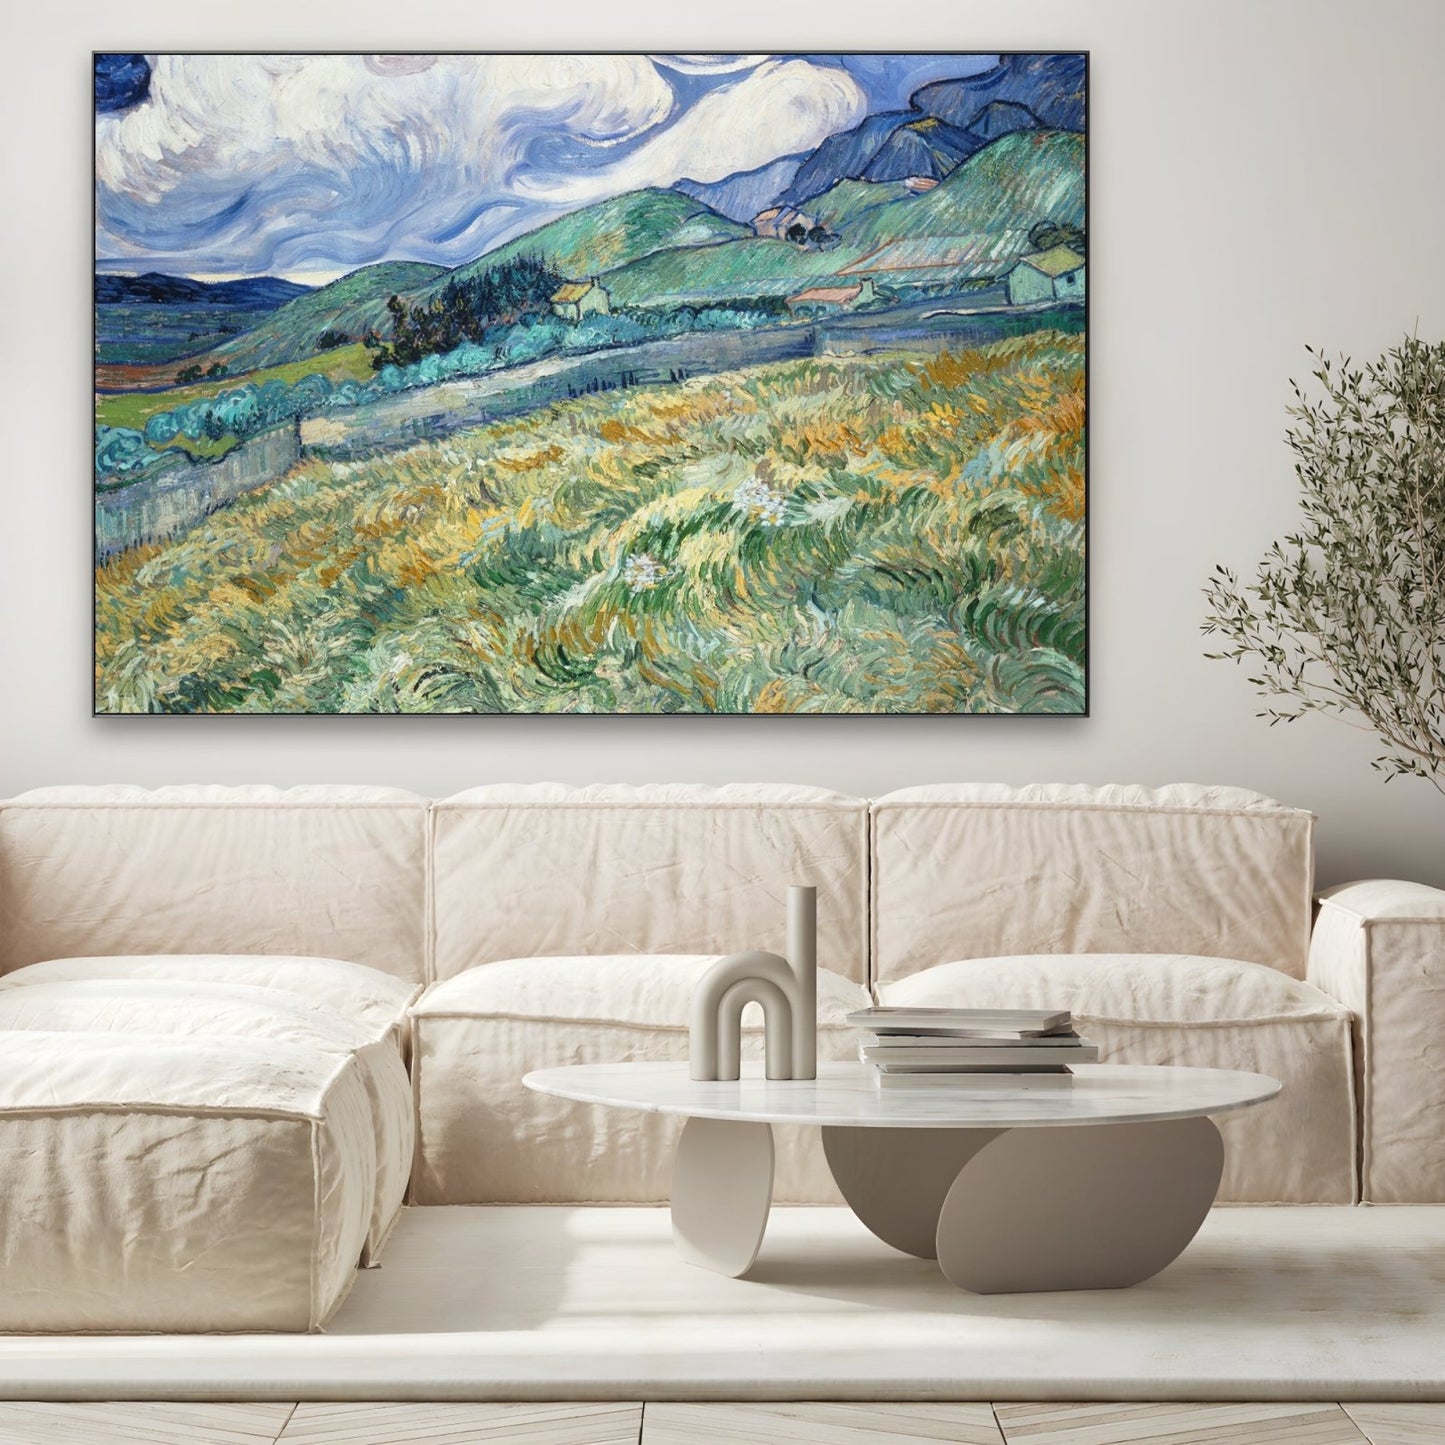 Pšenično polje i planine 1889, Vincent Van Gogh